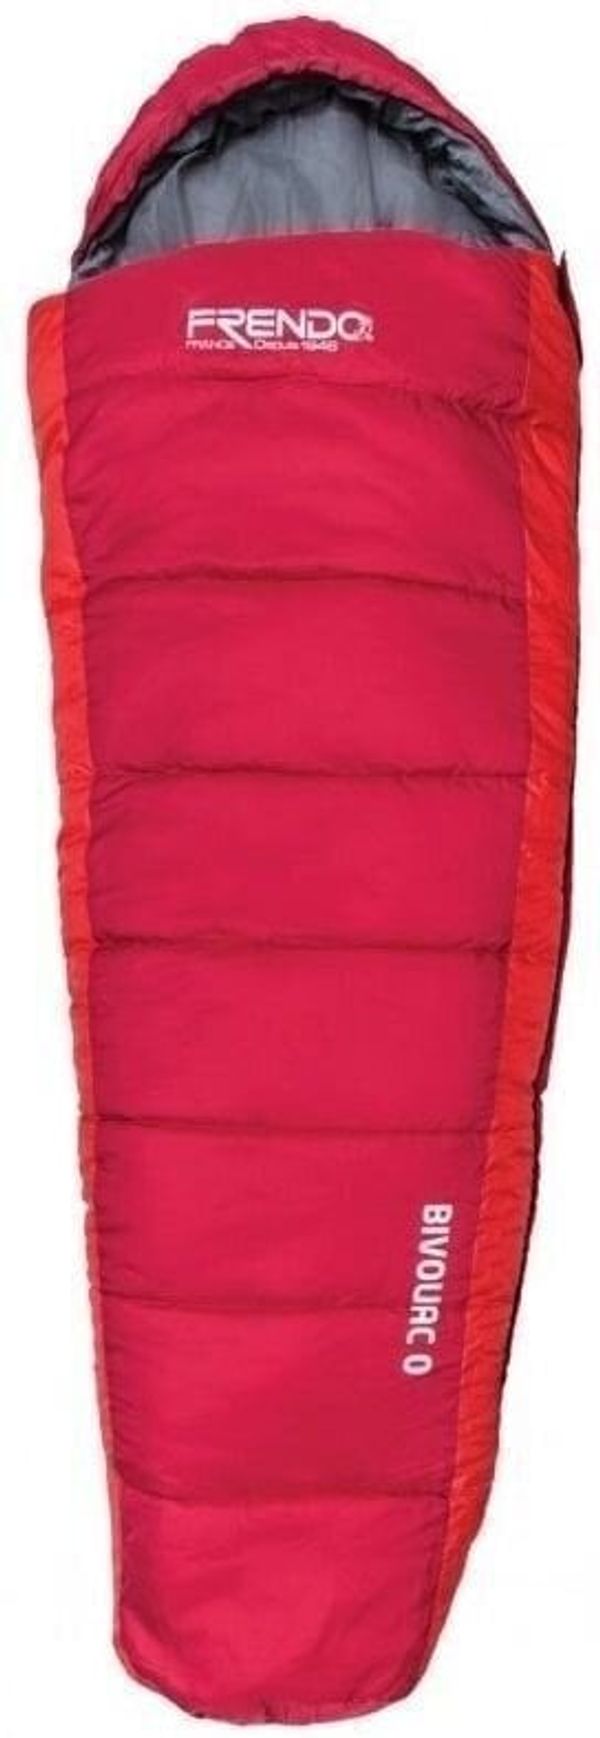 Frendo Frendo Bivouac 0 Red 205 cm Spalna vreča